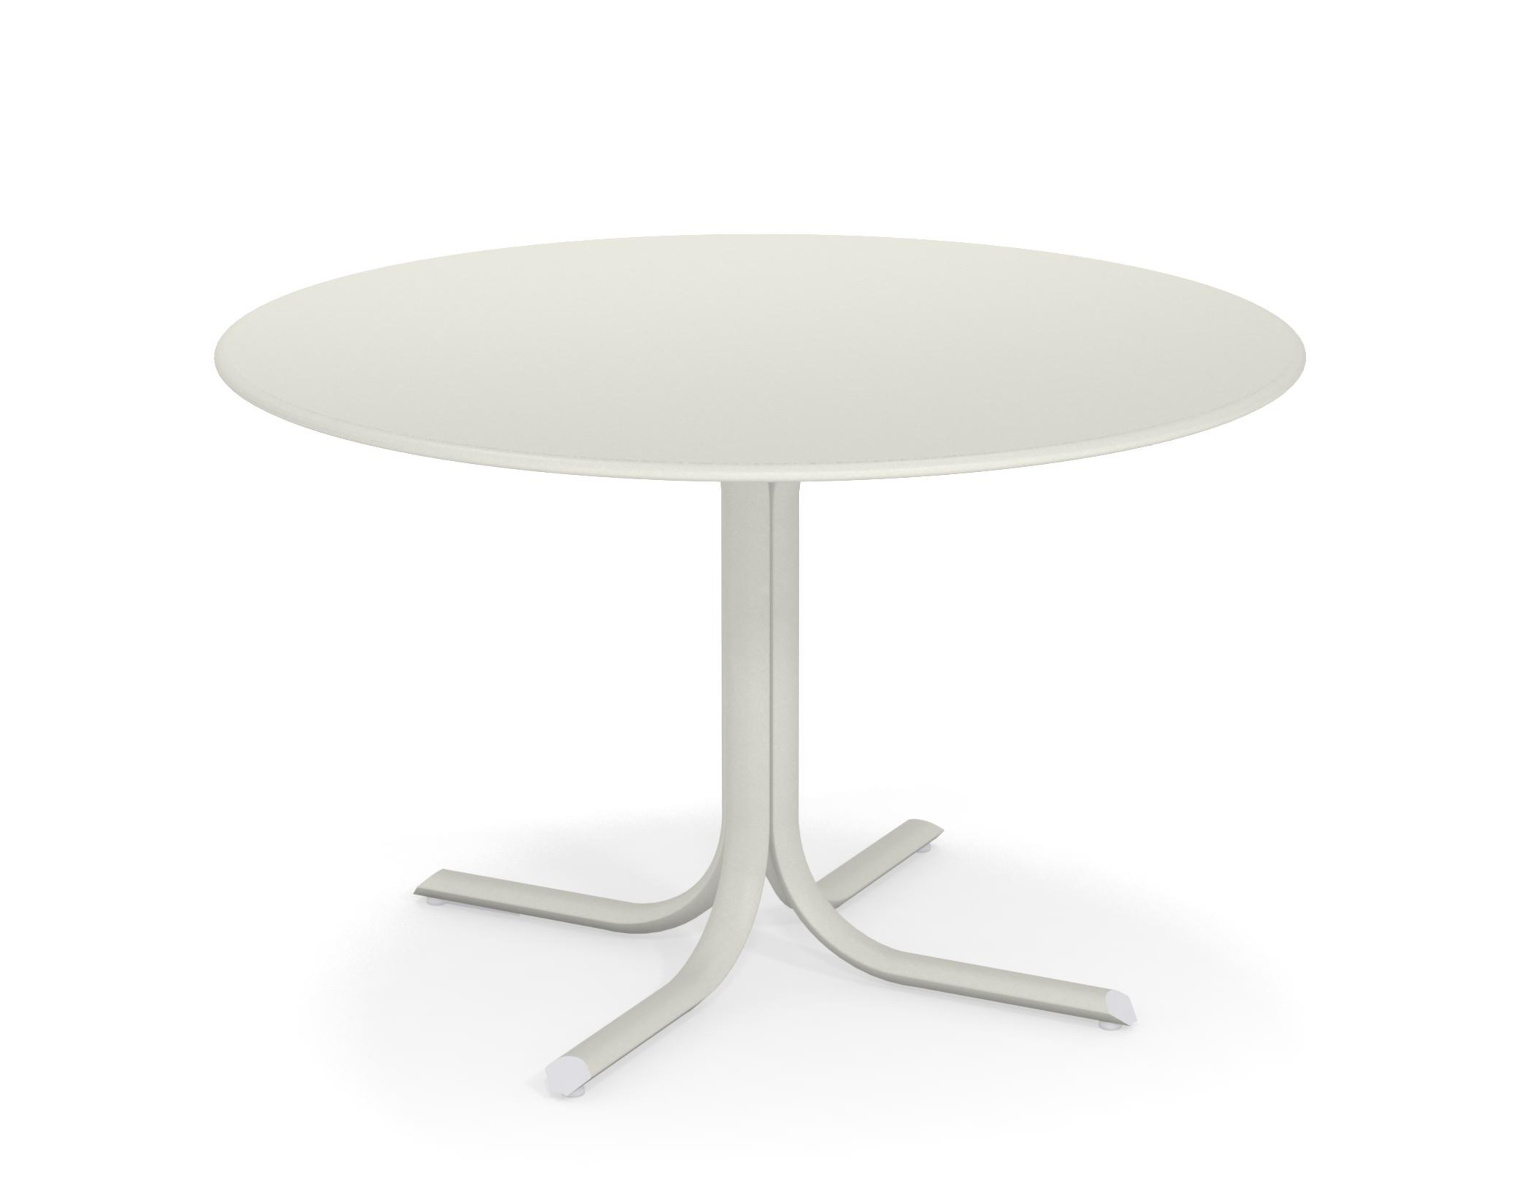 Table System mit runder Tischkante, Ø 117 cm, antikeisen